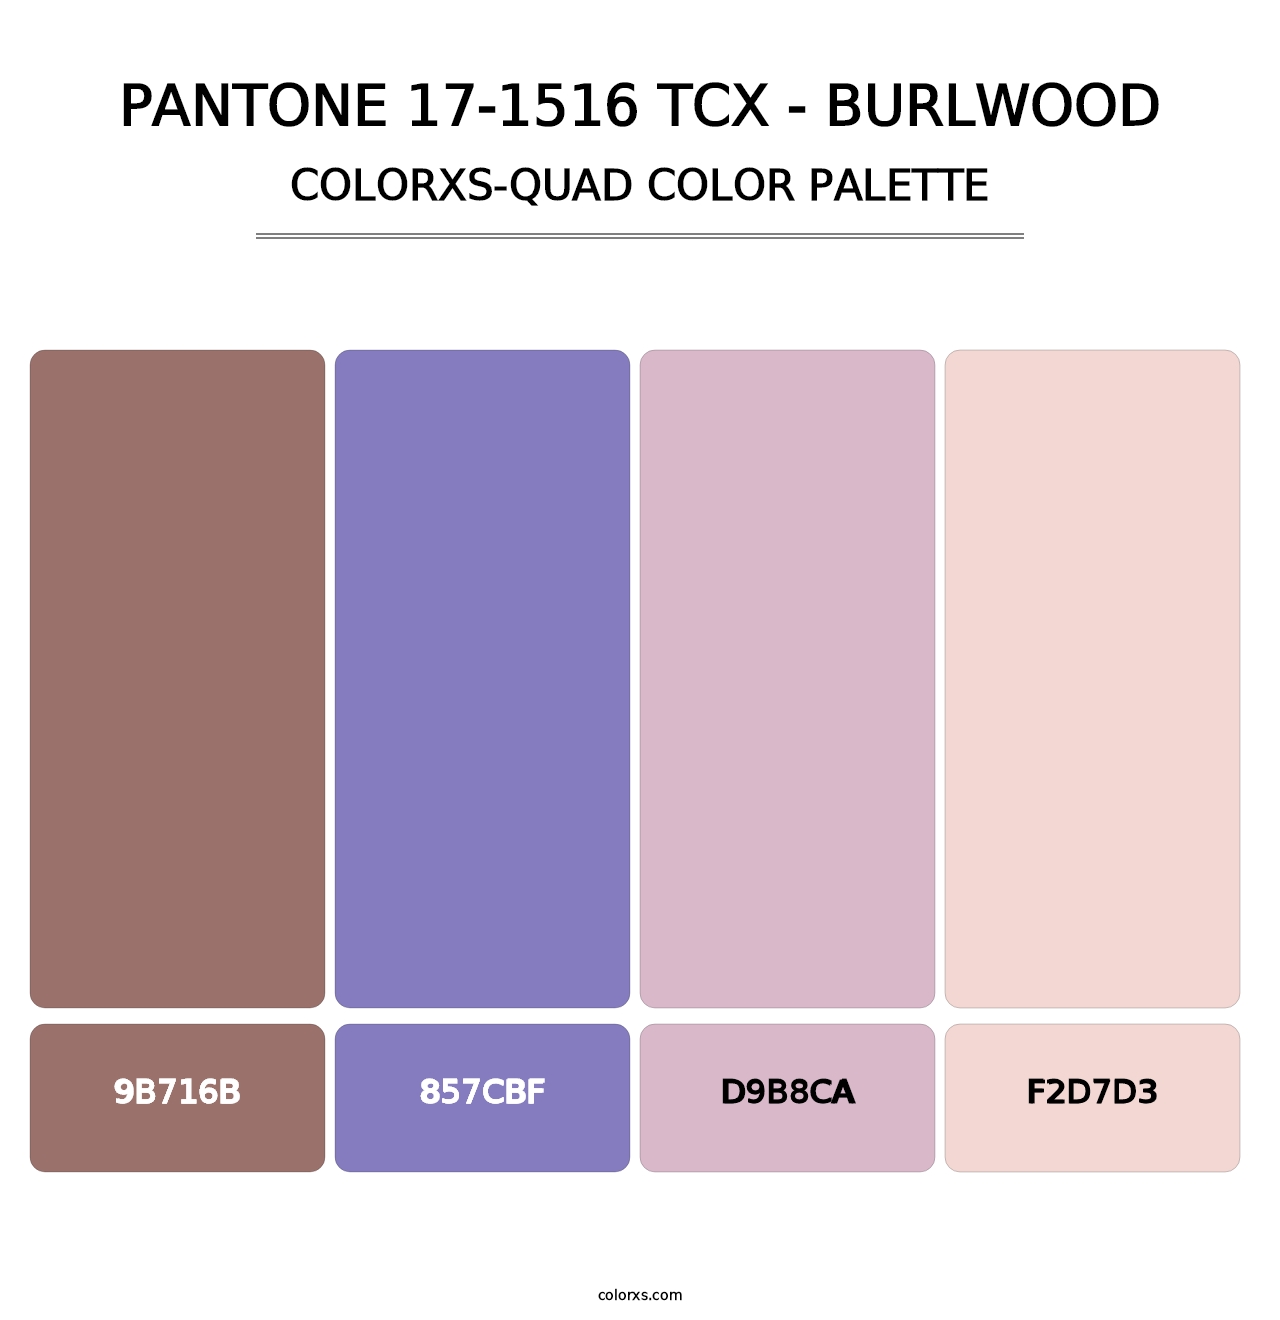 PANTONE 17-1516 TCX - Burlwood - Colorxs Quad Palette